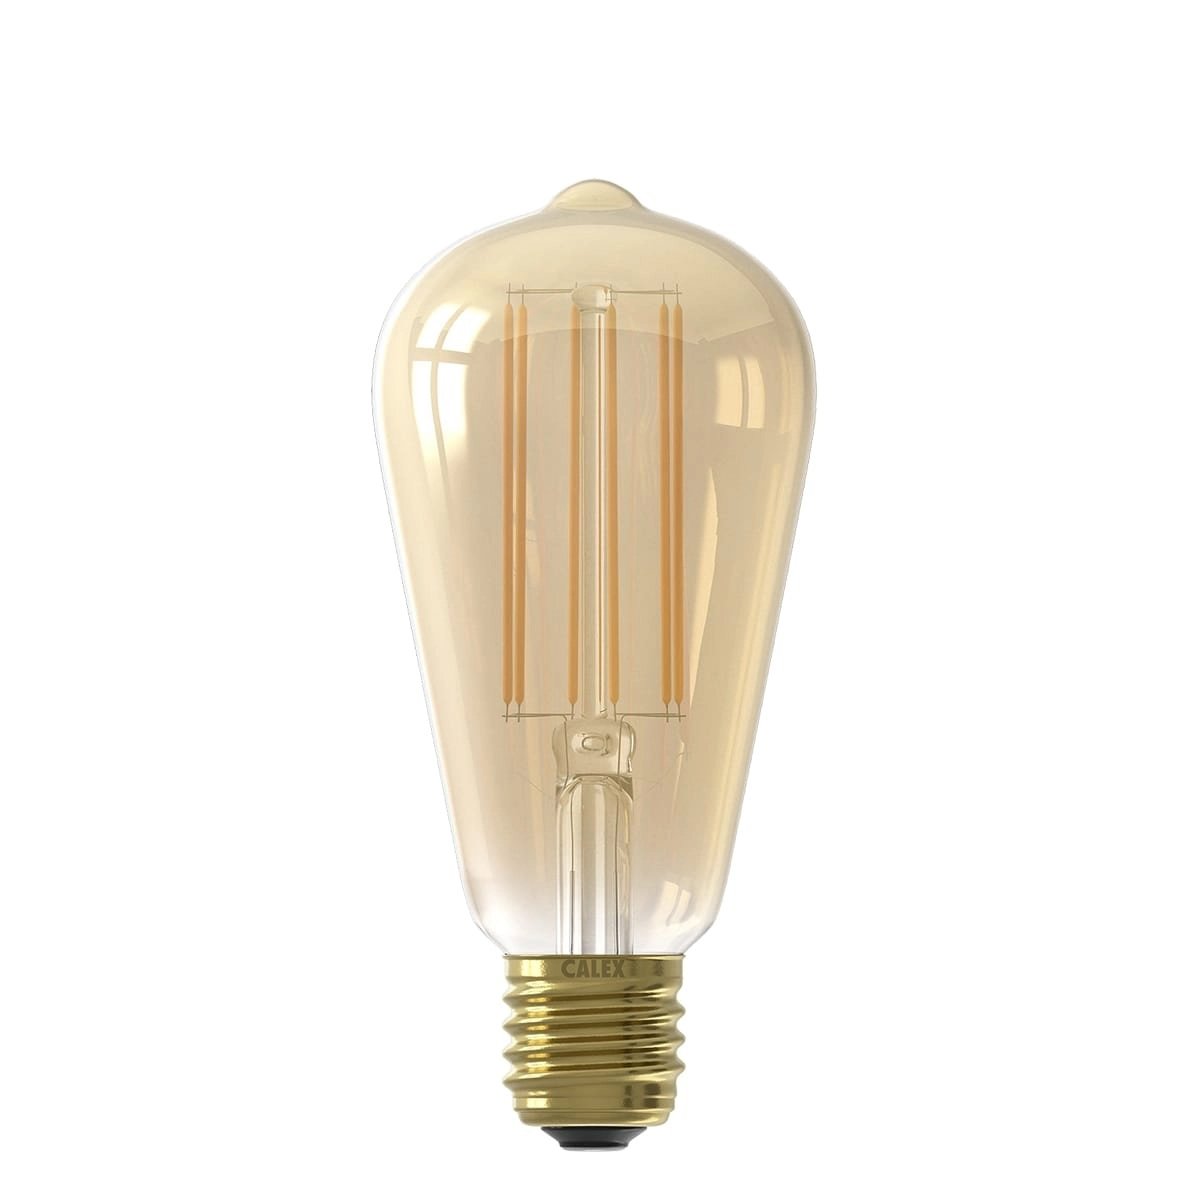 Led light filament Rustic Gold - 4W